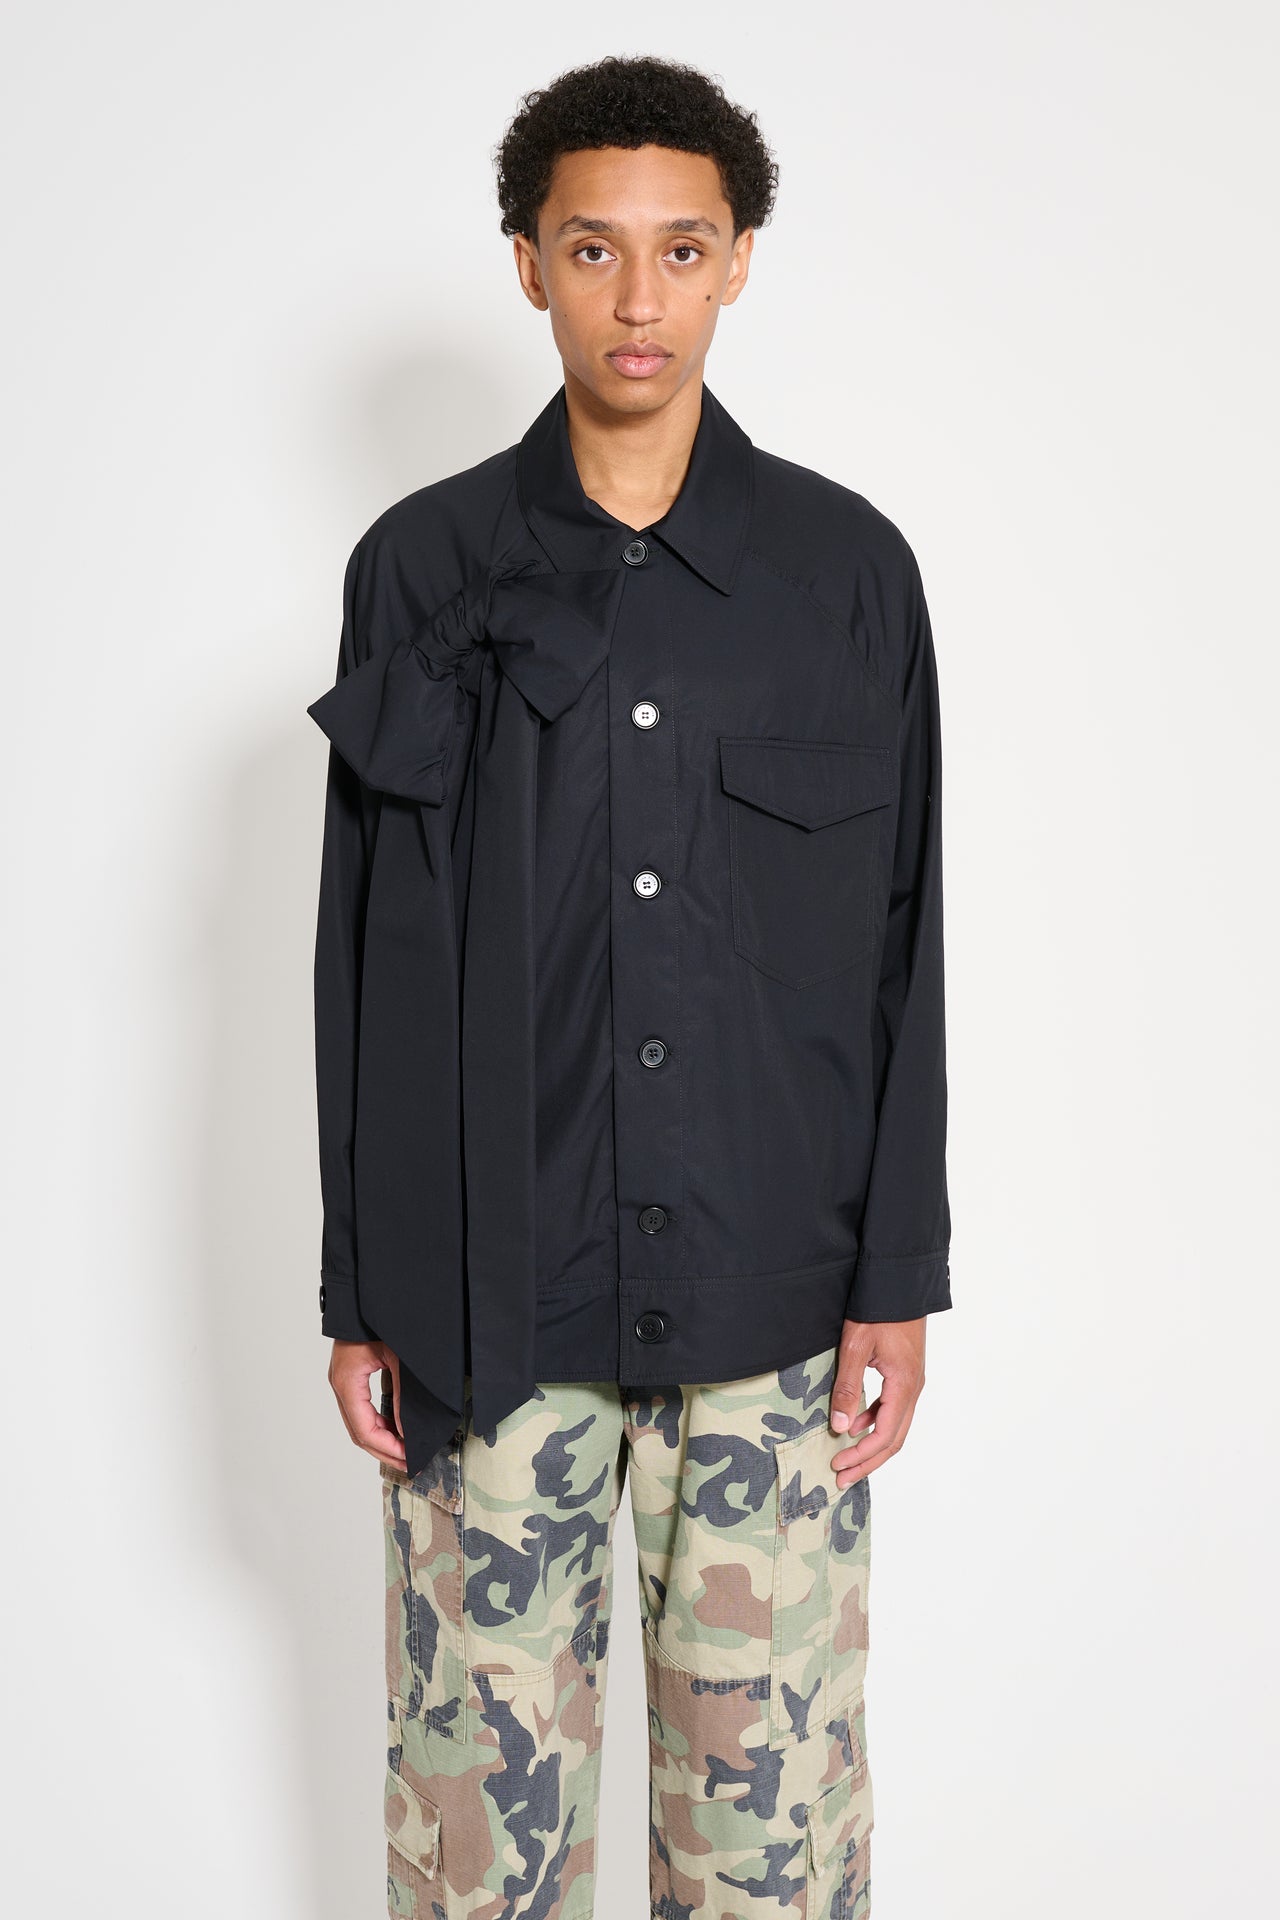 Simone Rocha Dolman Workwear Jacket With Bow Black